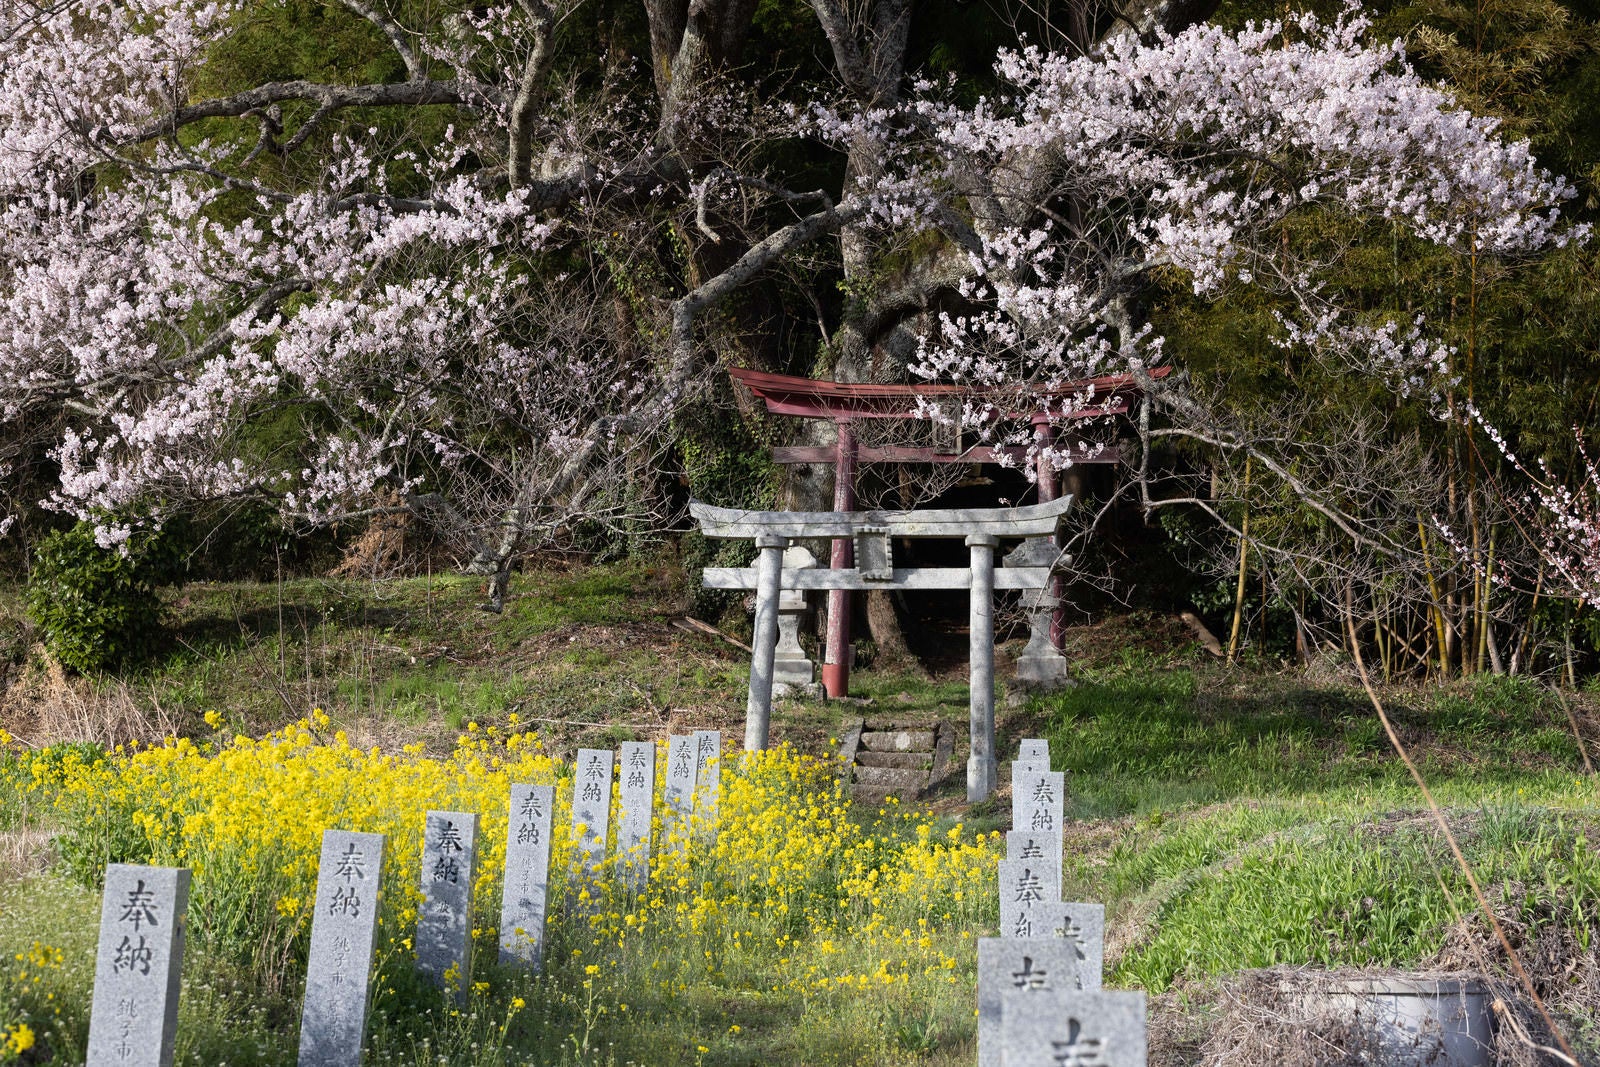 「鳥居の石段と子授け櫻」の写真